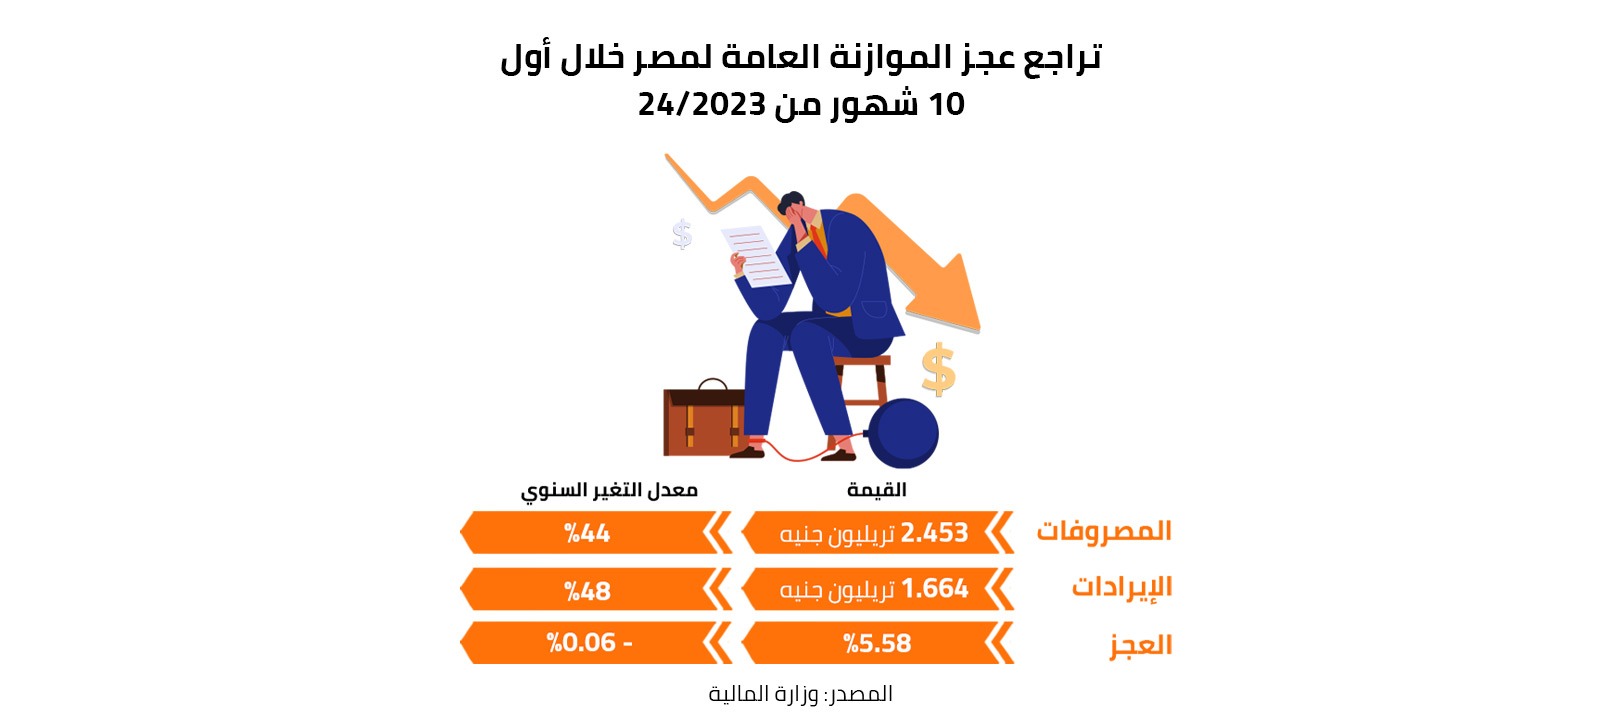 تراجع عجز الموازنة العامة لمصر خلال أول 10 شهور من 2023/24